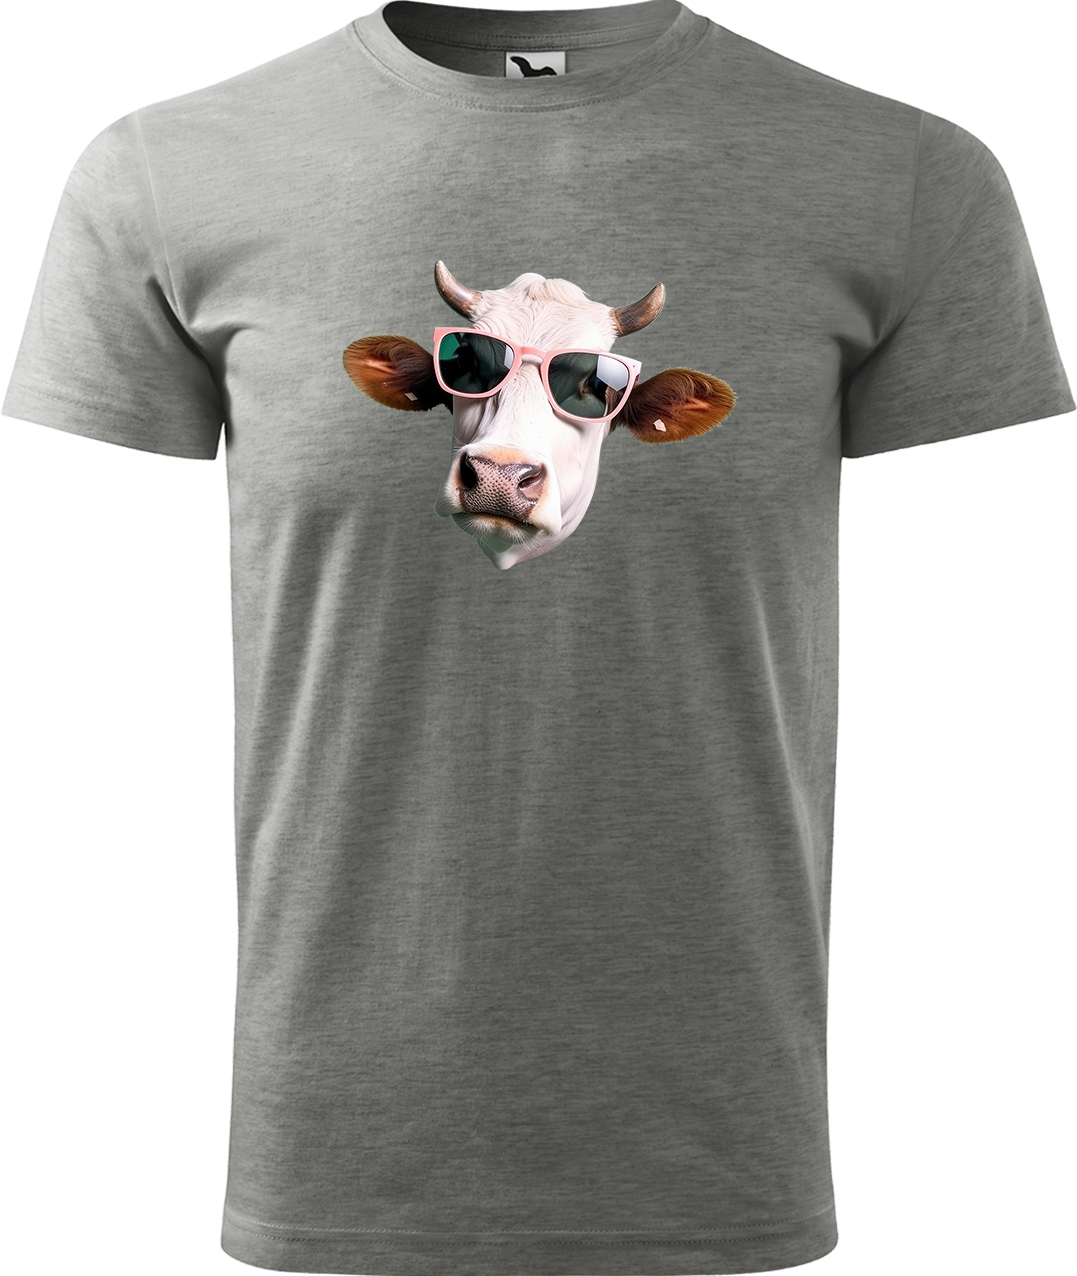 Pánské tričko s krávou - Kráva v brýlích Velikost: S, Barva: Tmavě šedý melír (12), Střih: pánský